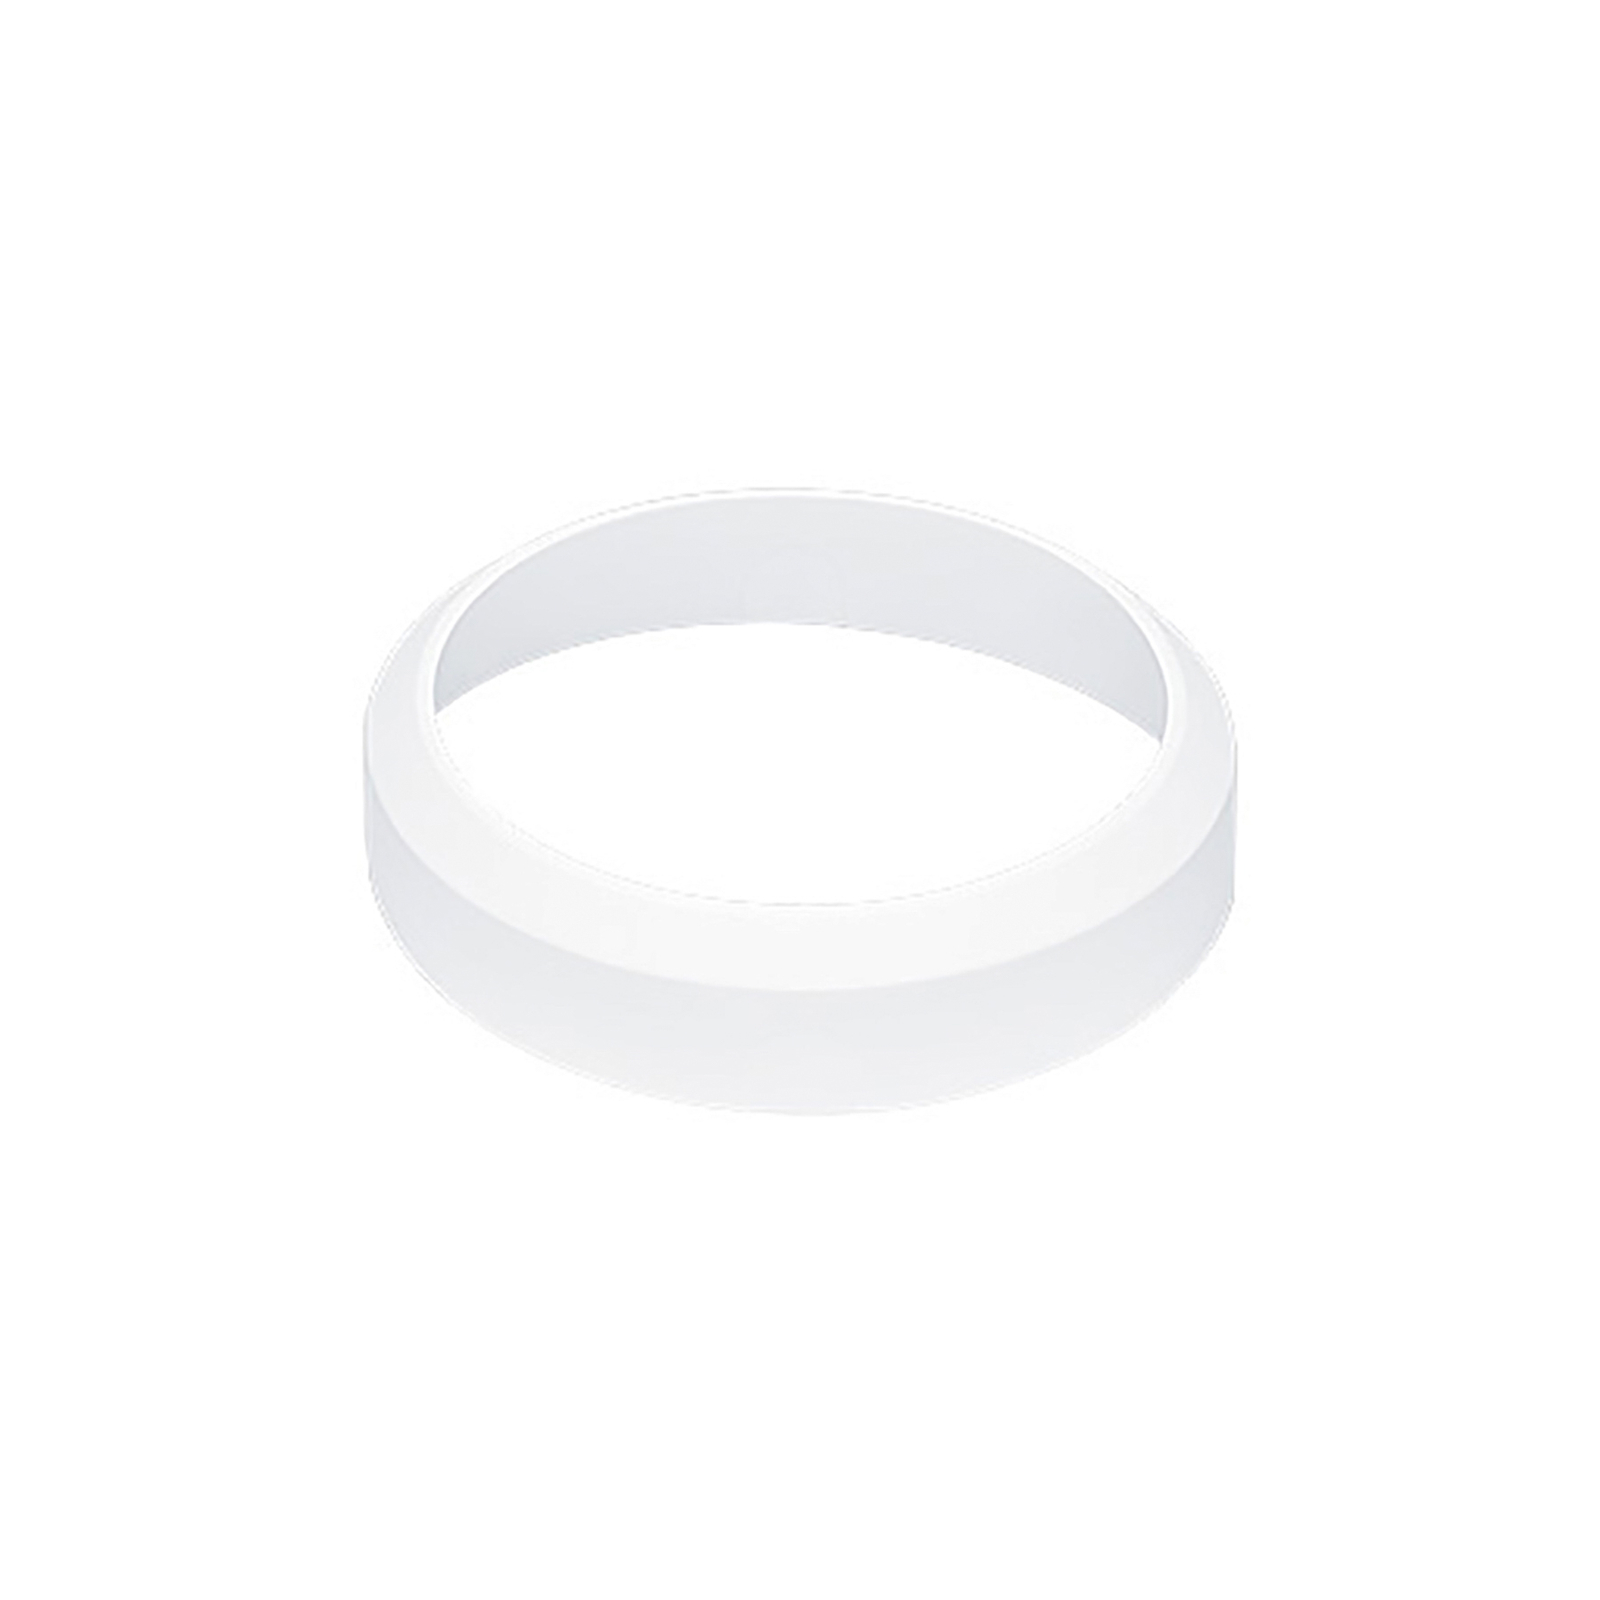 THORNeco prednji prsten za Laru/Saru, Ø25cm, bijeli